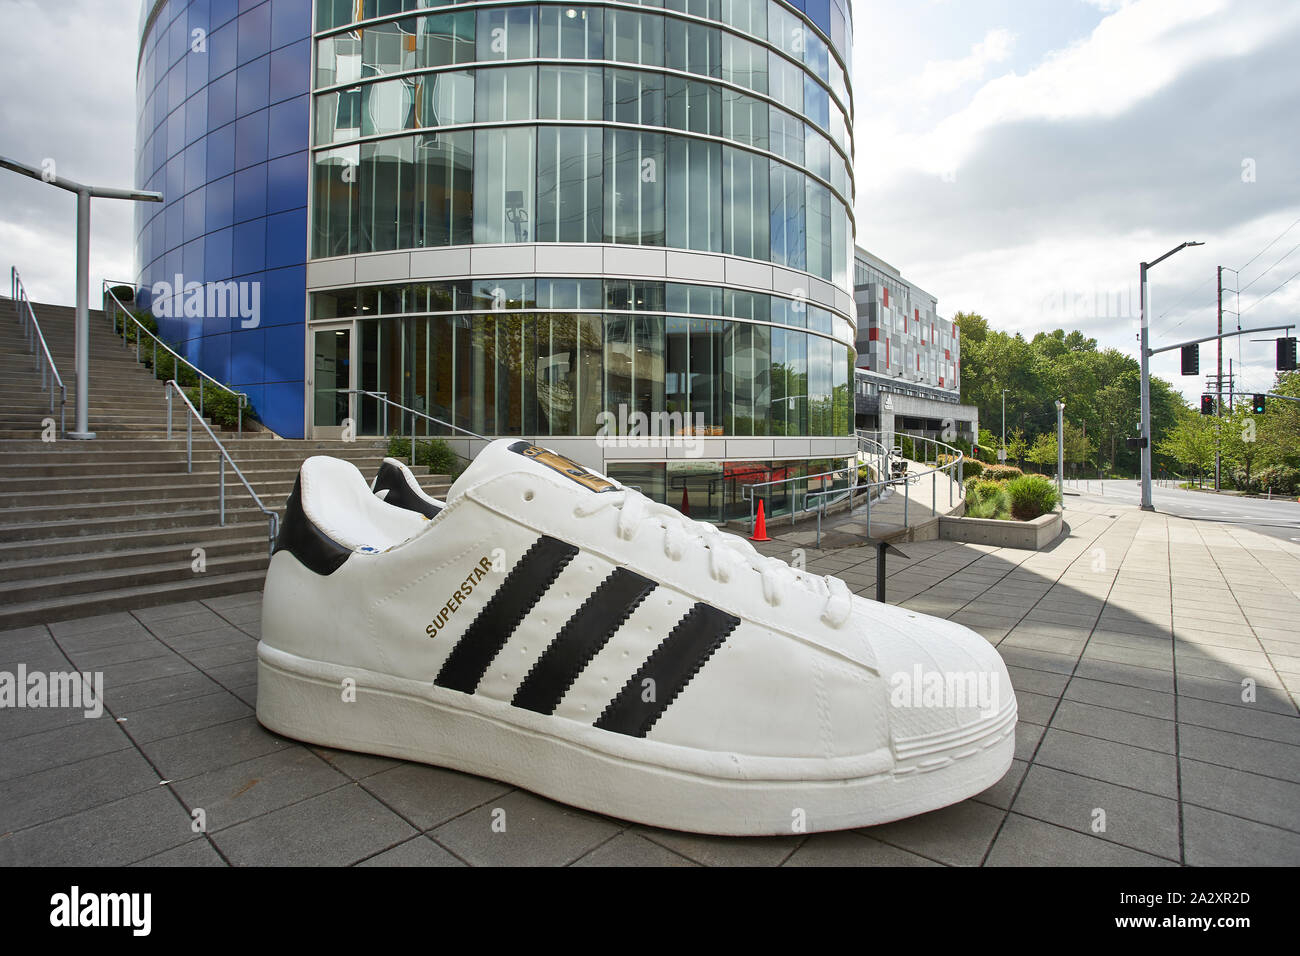 Riesige Adidas Schuhe sind am Eingang zu Adidas America Inc., dem nordamerikanischen Hauptsitz am 2. Mai 2019 zu sehen. Stockfoto